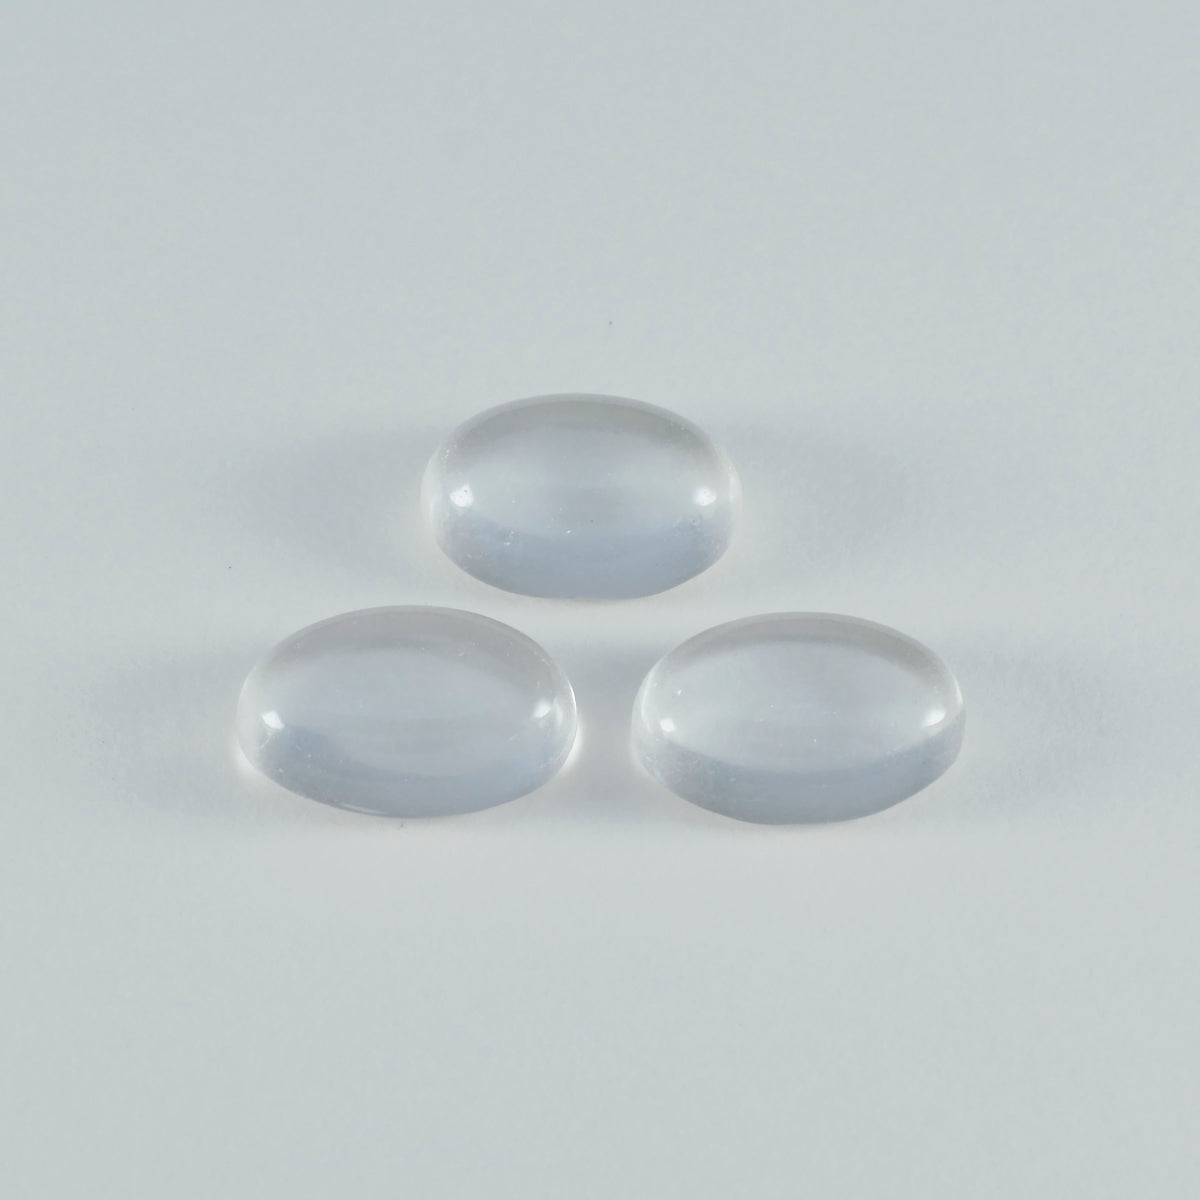 Riyogems 1pc cabochon de quartz en cristal blanc 10x14mm forme ovale qualité surprenante gemme en vrac